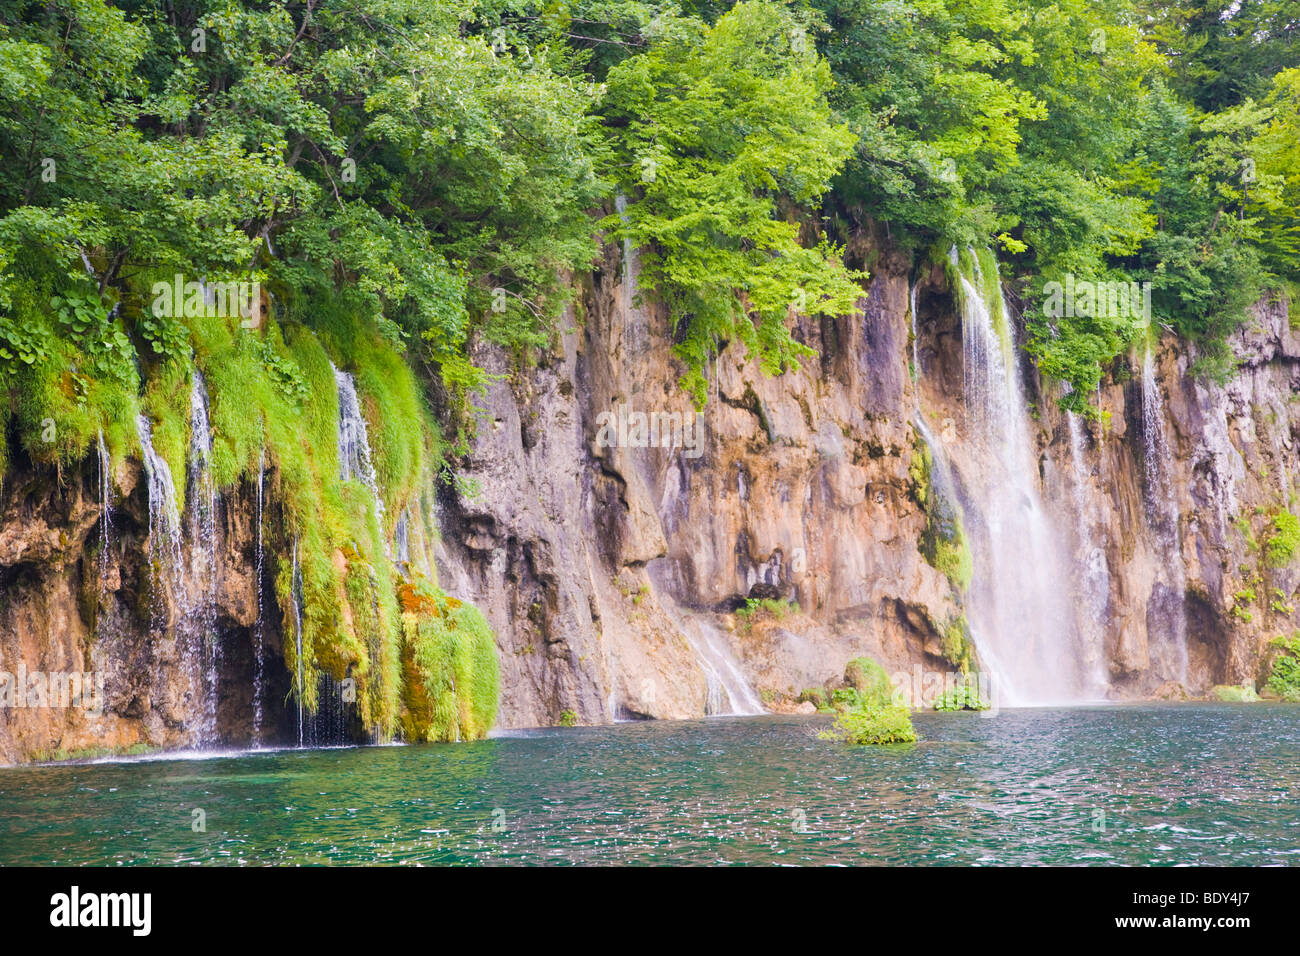 Cascades, Plitvicka Jezera, le parc national des Lacs de Plitvice, Croatie, Europe, Lika-Senj Banque D'Images